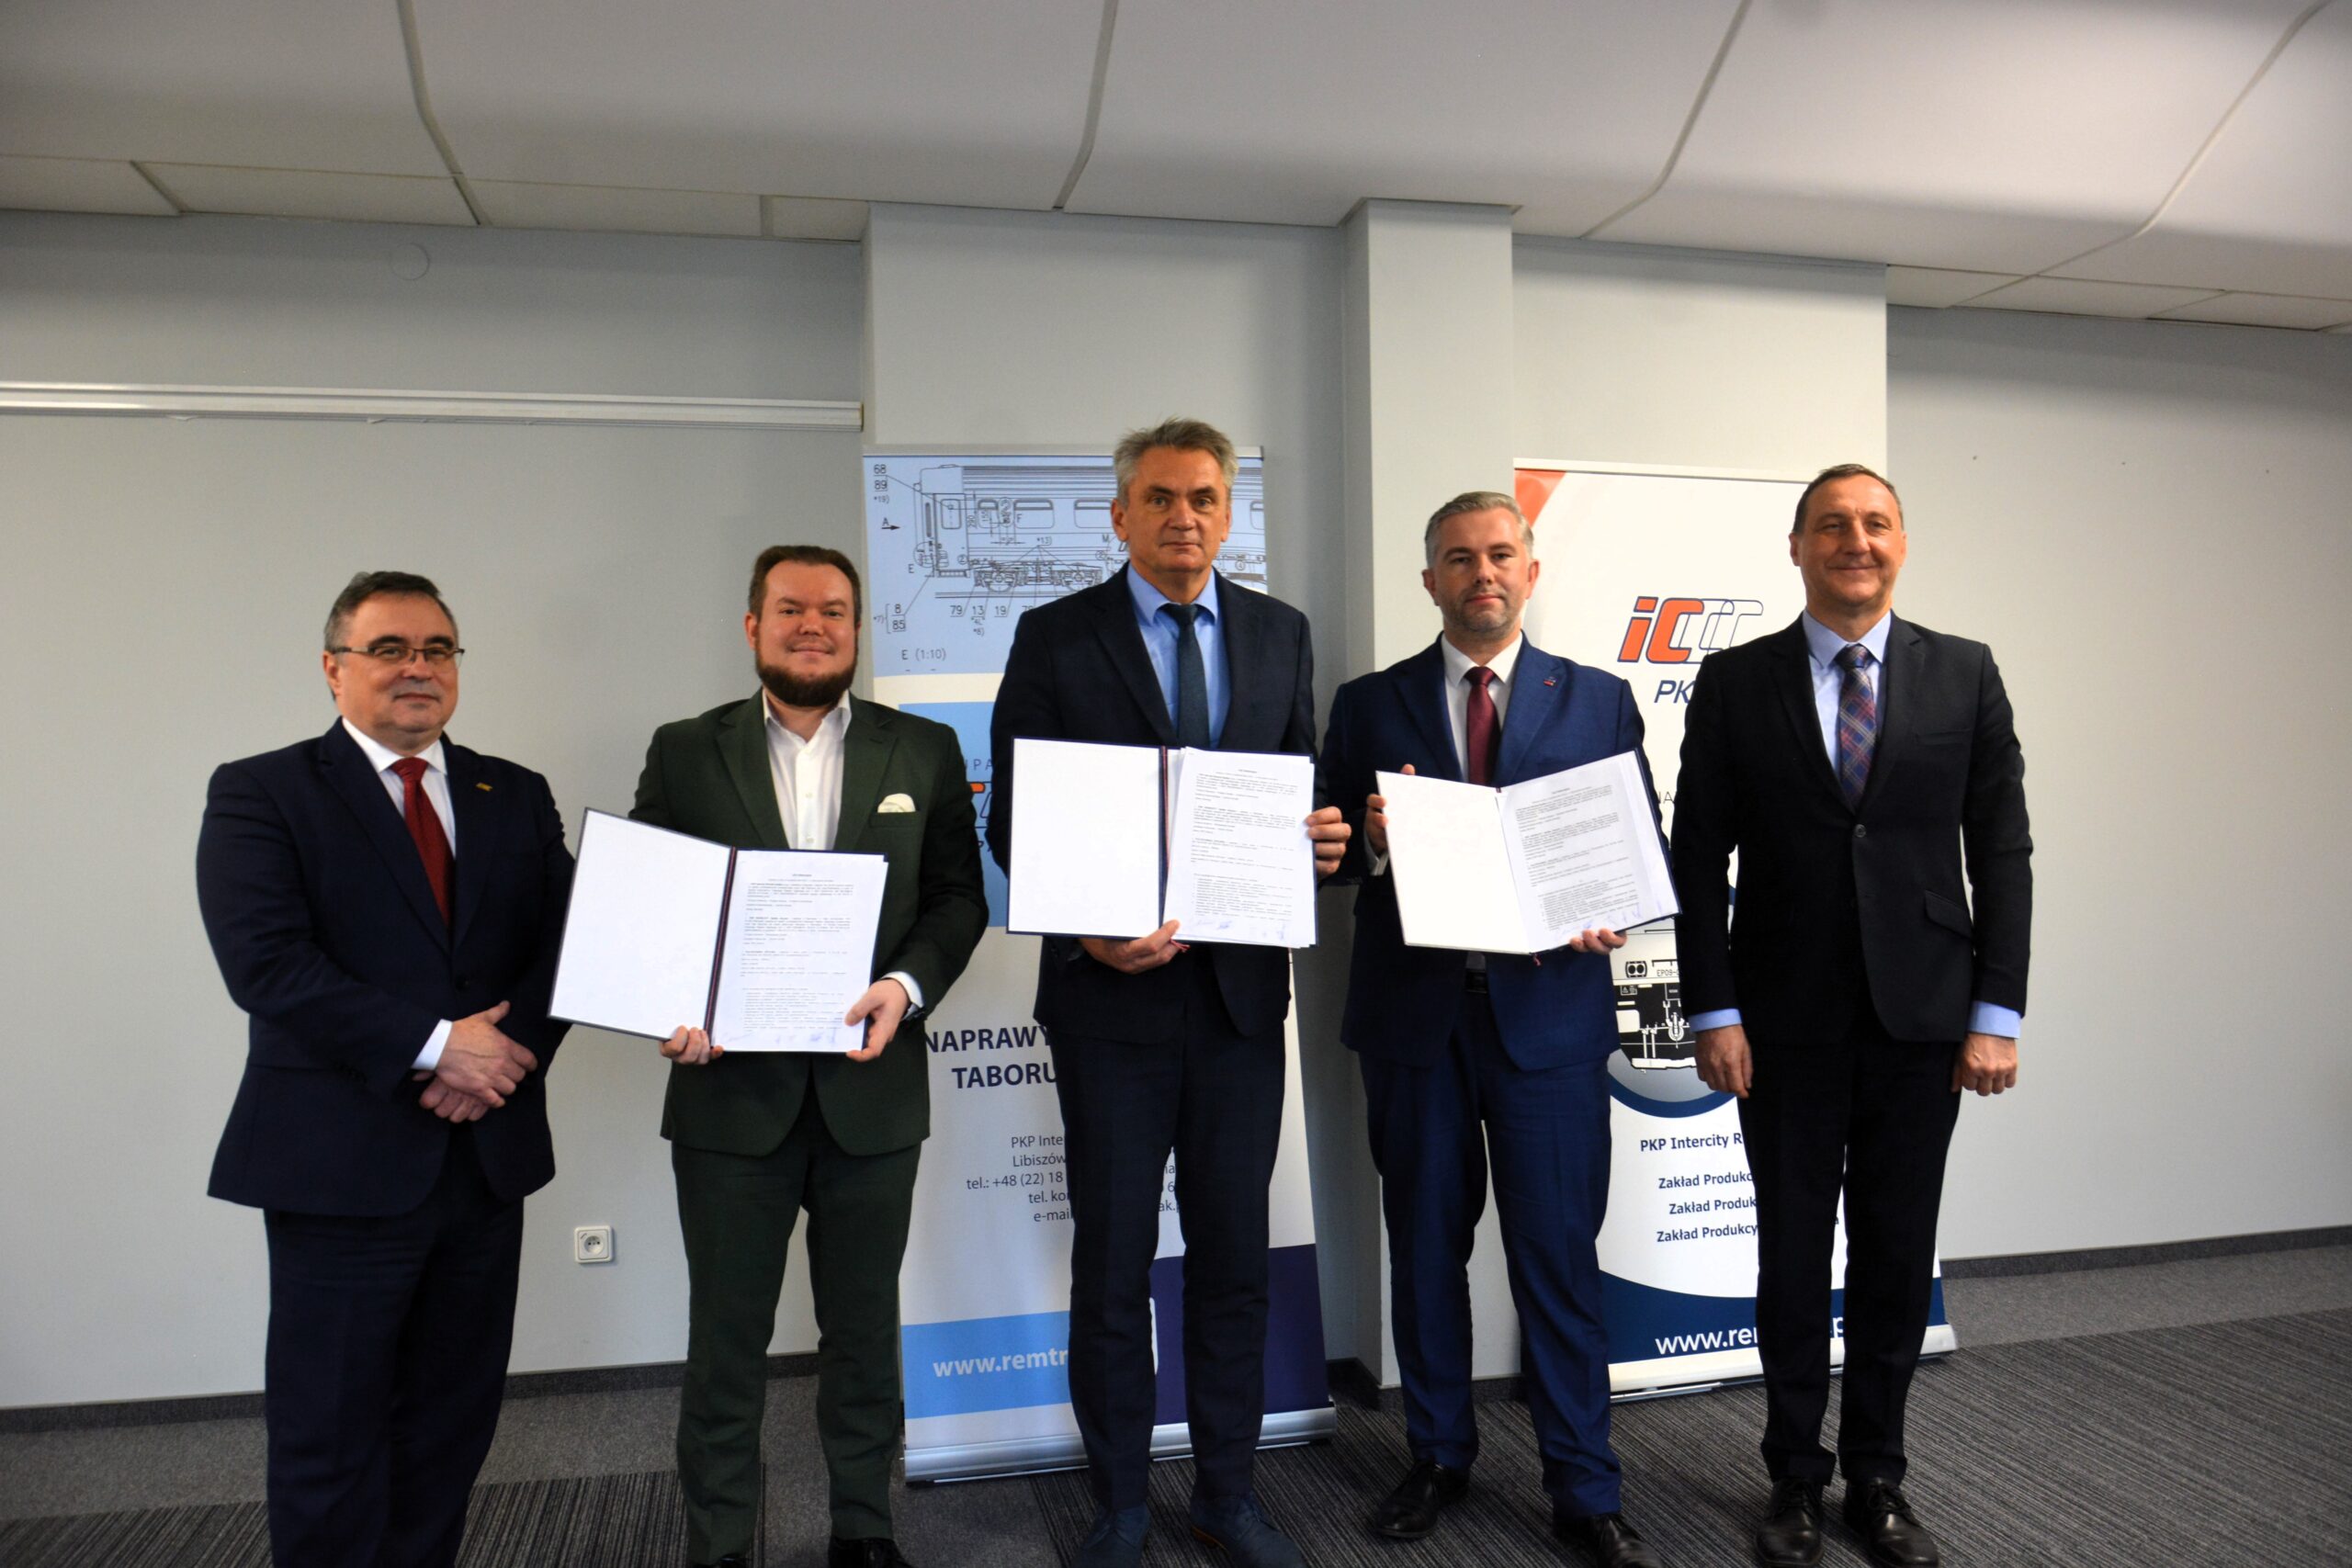 Spółki PKP Intercity Remtrak oraz PKP Intercity podpisały list intencyjny w sprawie współpracy z Politechniką Opolską